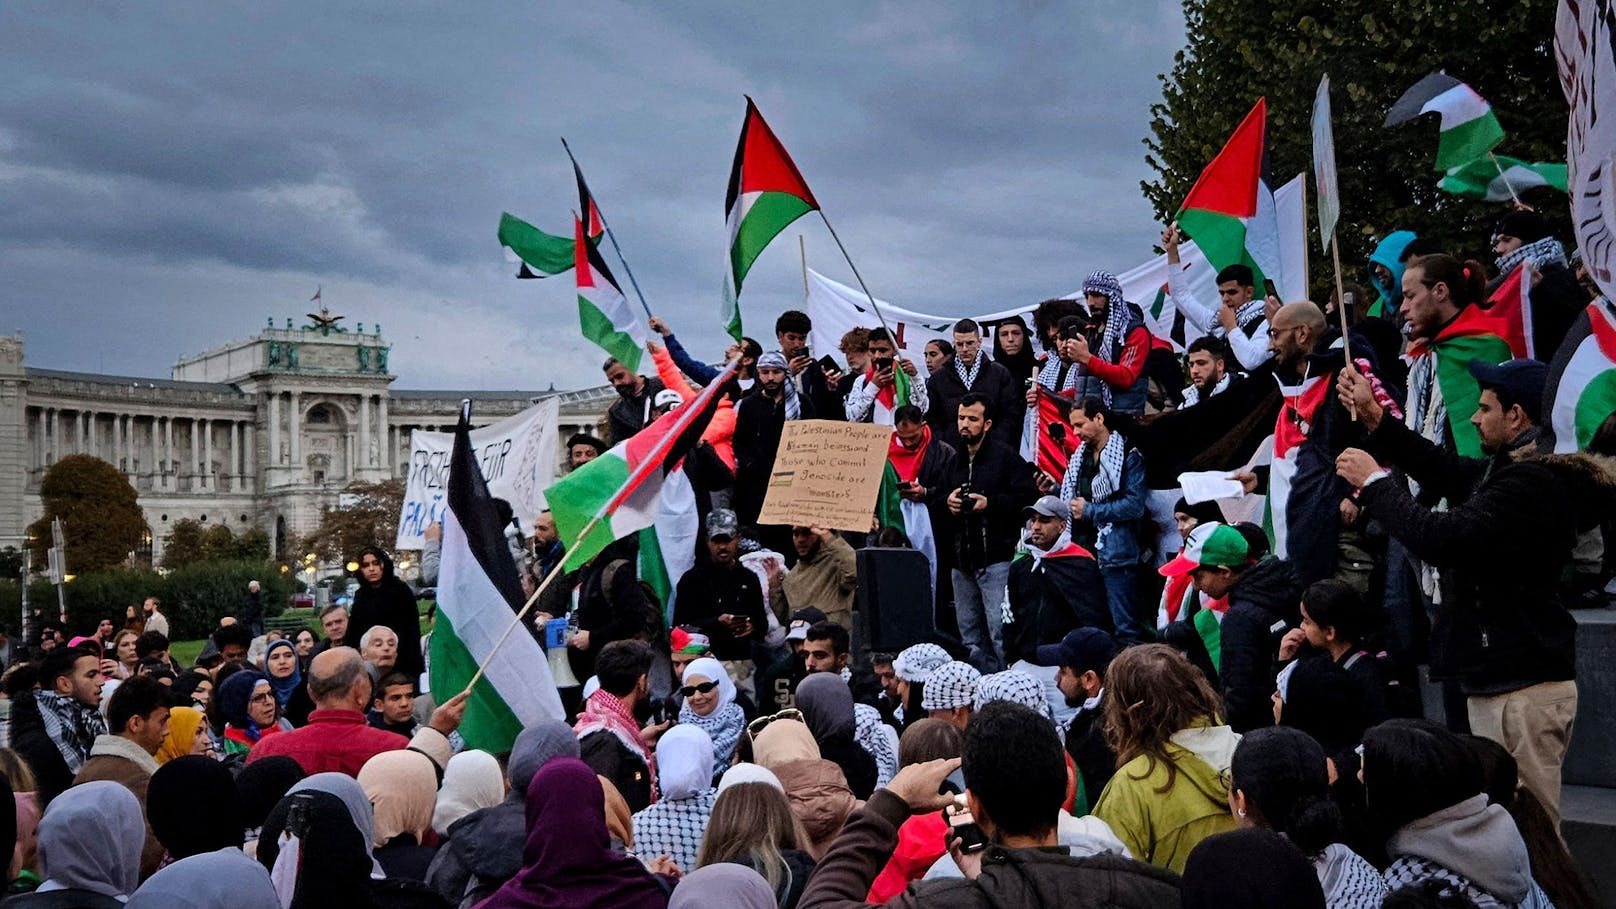 Verkehrs-Chaos in Wien – Ringsperre wegen Gaza-Demo